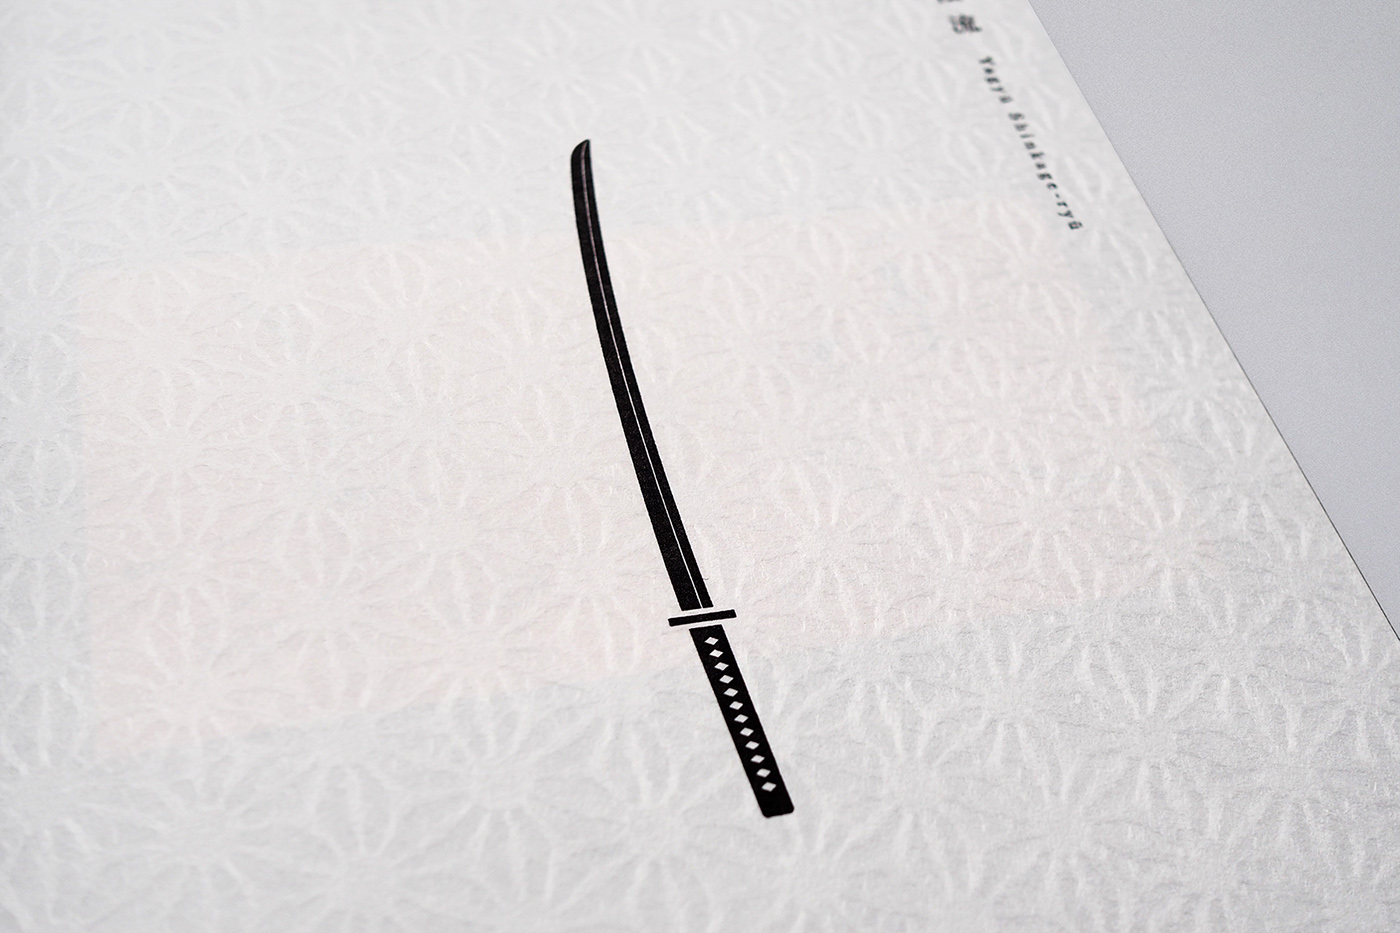 武道 Budo 写真集 typography   タイポグラフィ gold silver 和柄 文様 pattern